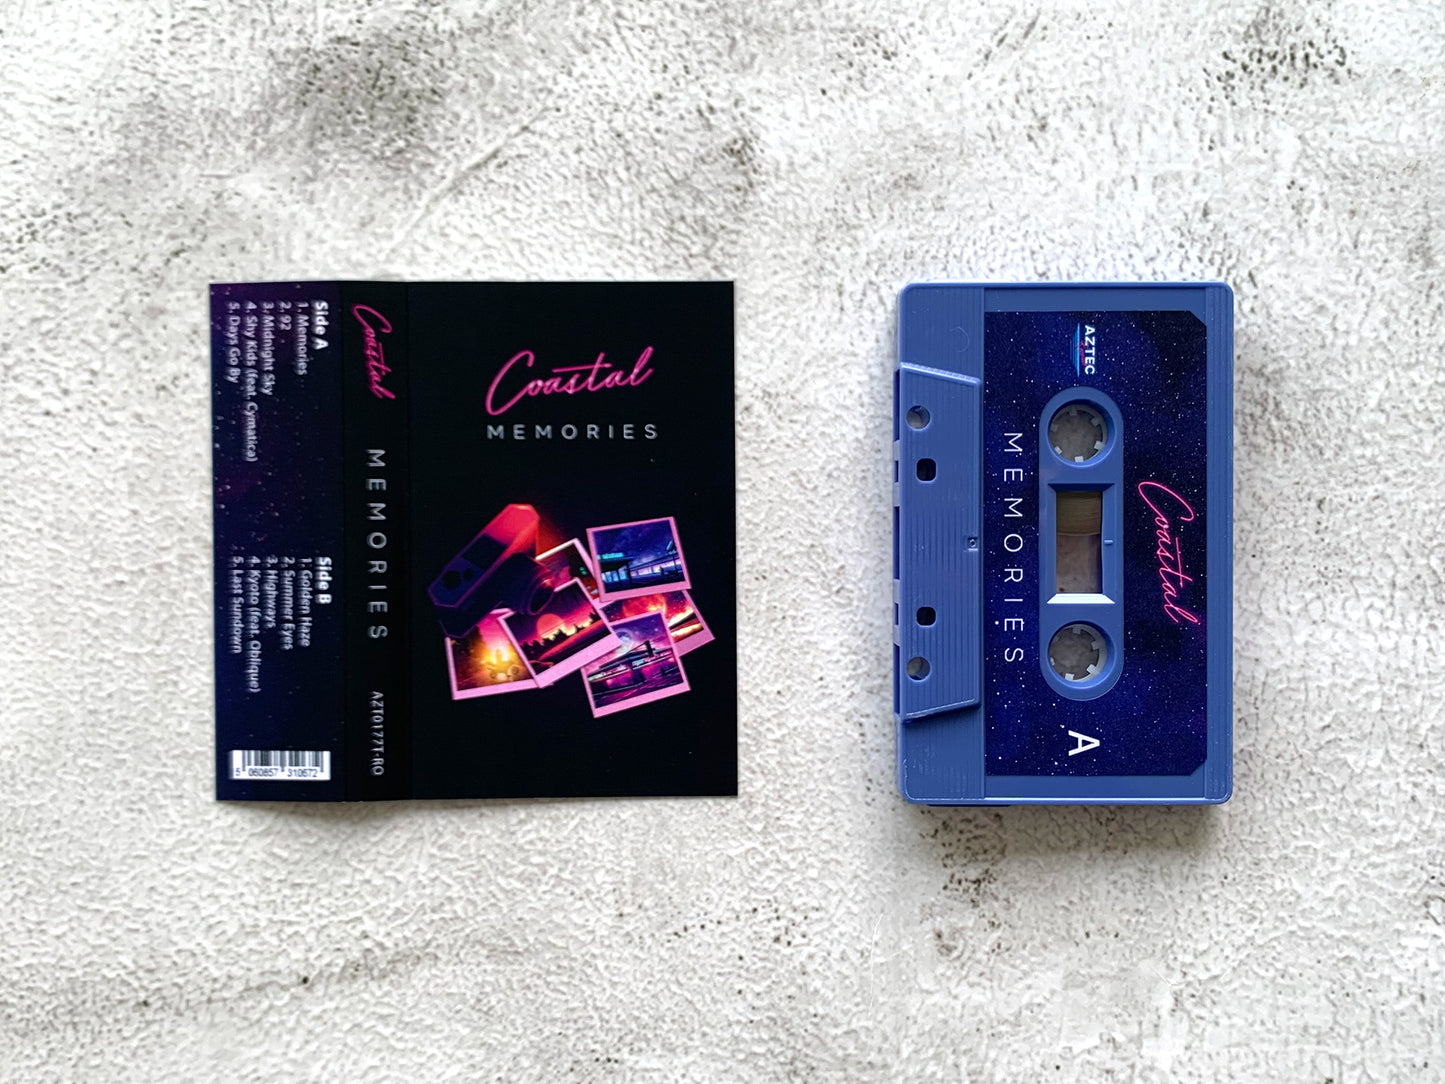 COASTAL - Memories - ROYAL PURPLE Cassette